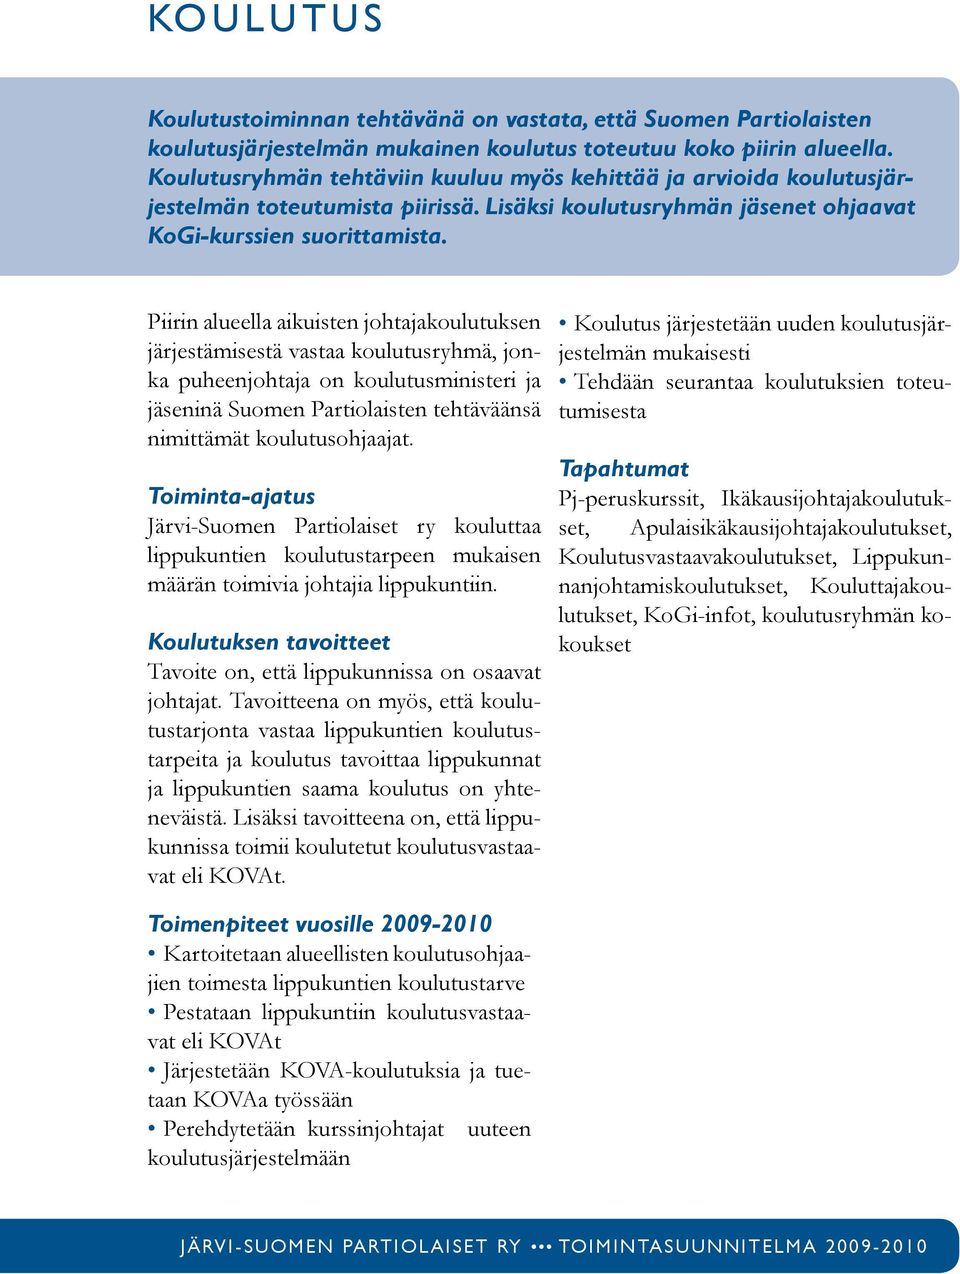 Piirin alueella aikuisten johtajakoulutuksen järjestämisestä vastaa koulutusryhmä, jonka puheenjohtaja on koulutusministeri ja jäseninä Suomen Partiolaisten tehtäväänsä nimittämät koulutusohjaajat.